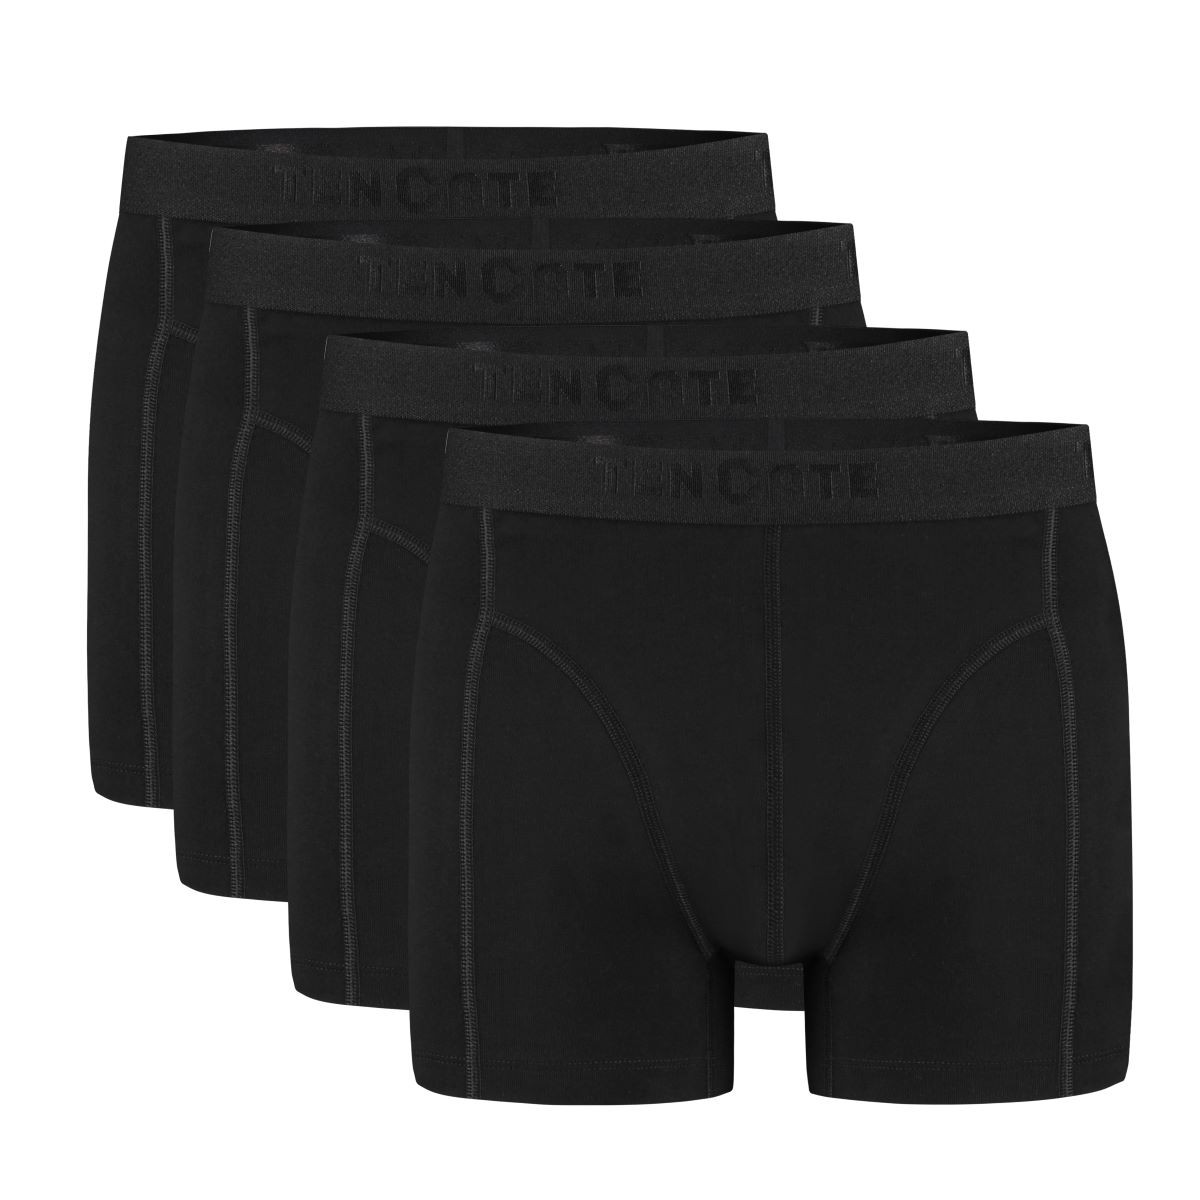 Ten Cate Boxershorts Organic Cotton 4-pack Zwart-XL